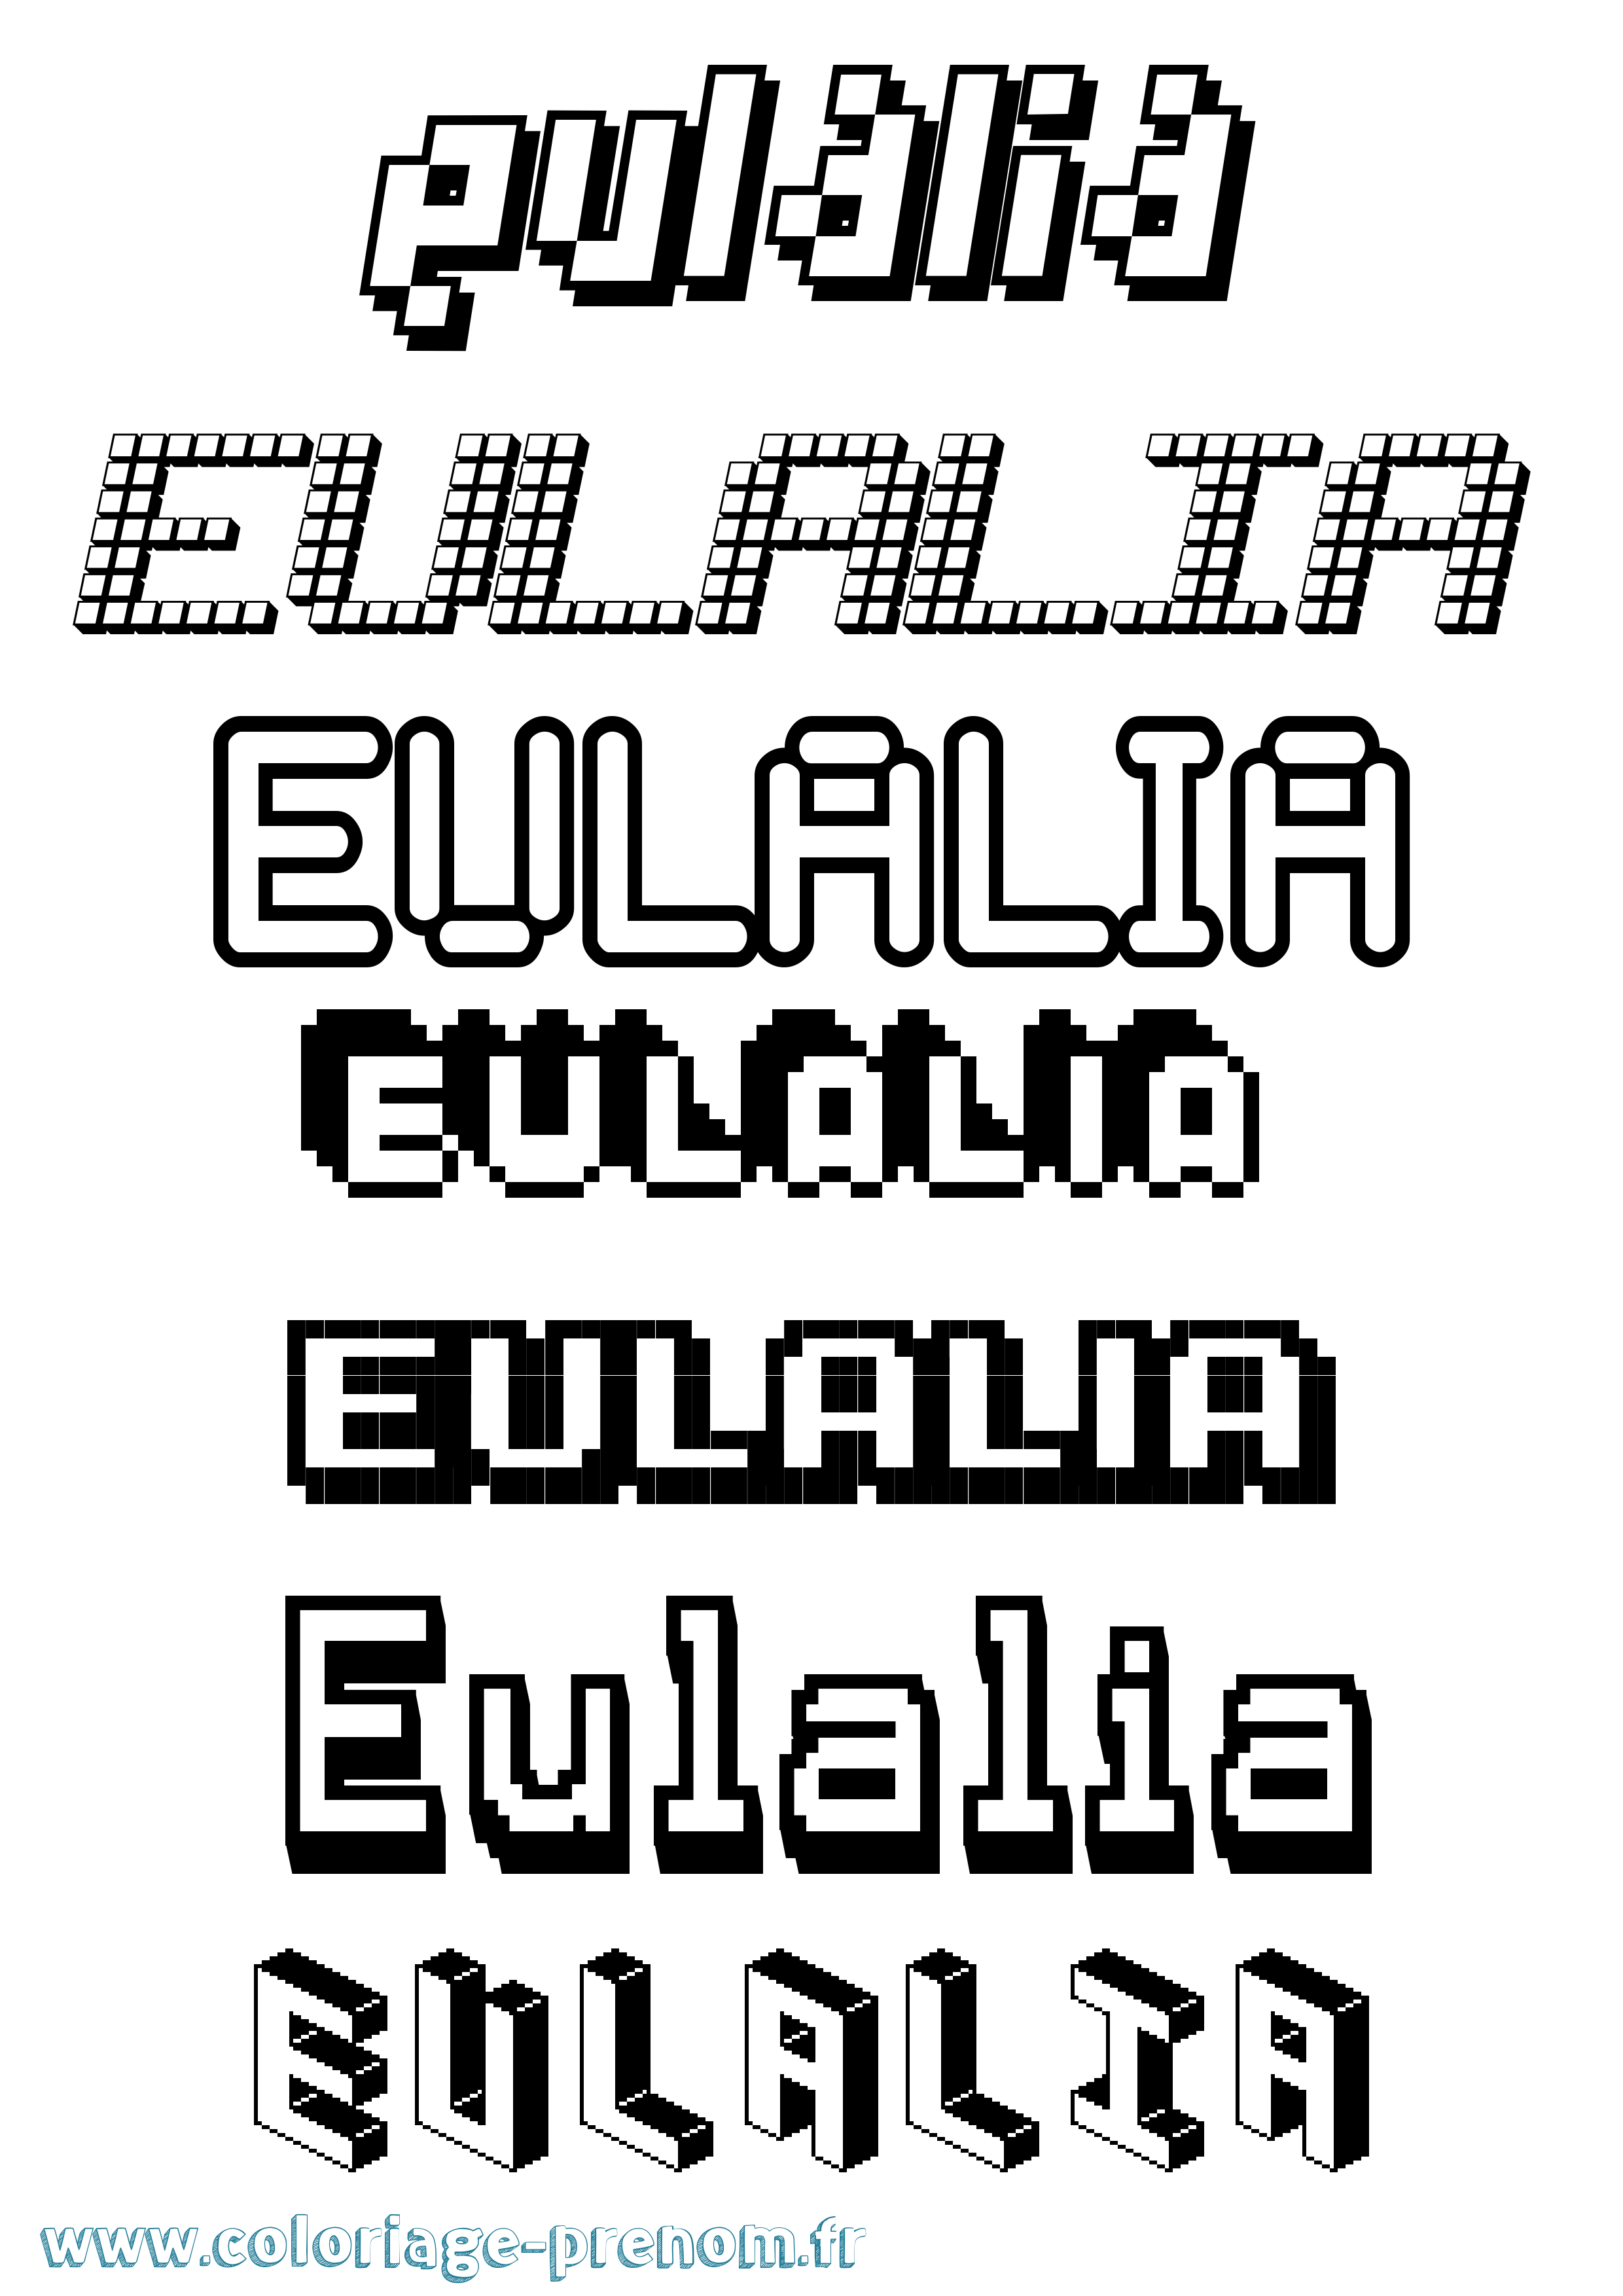 Coloriage prénom Eulalia Pixel